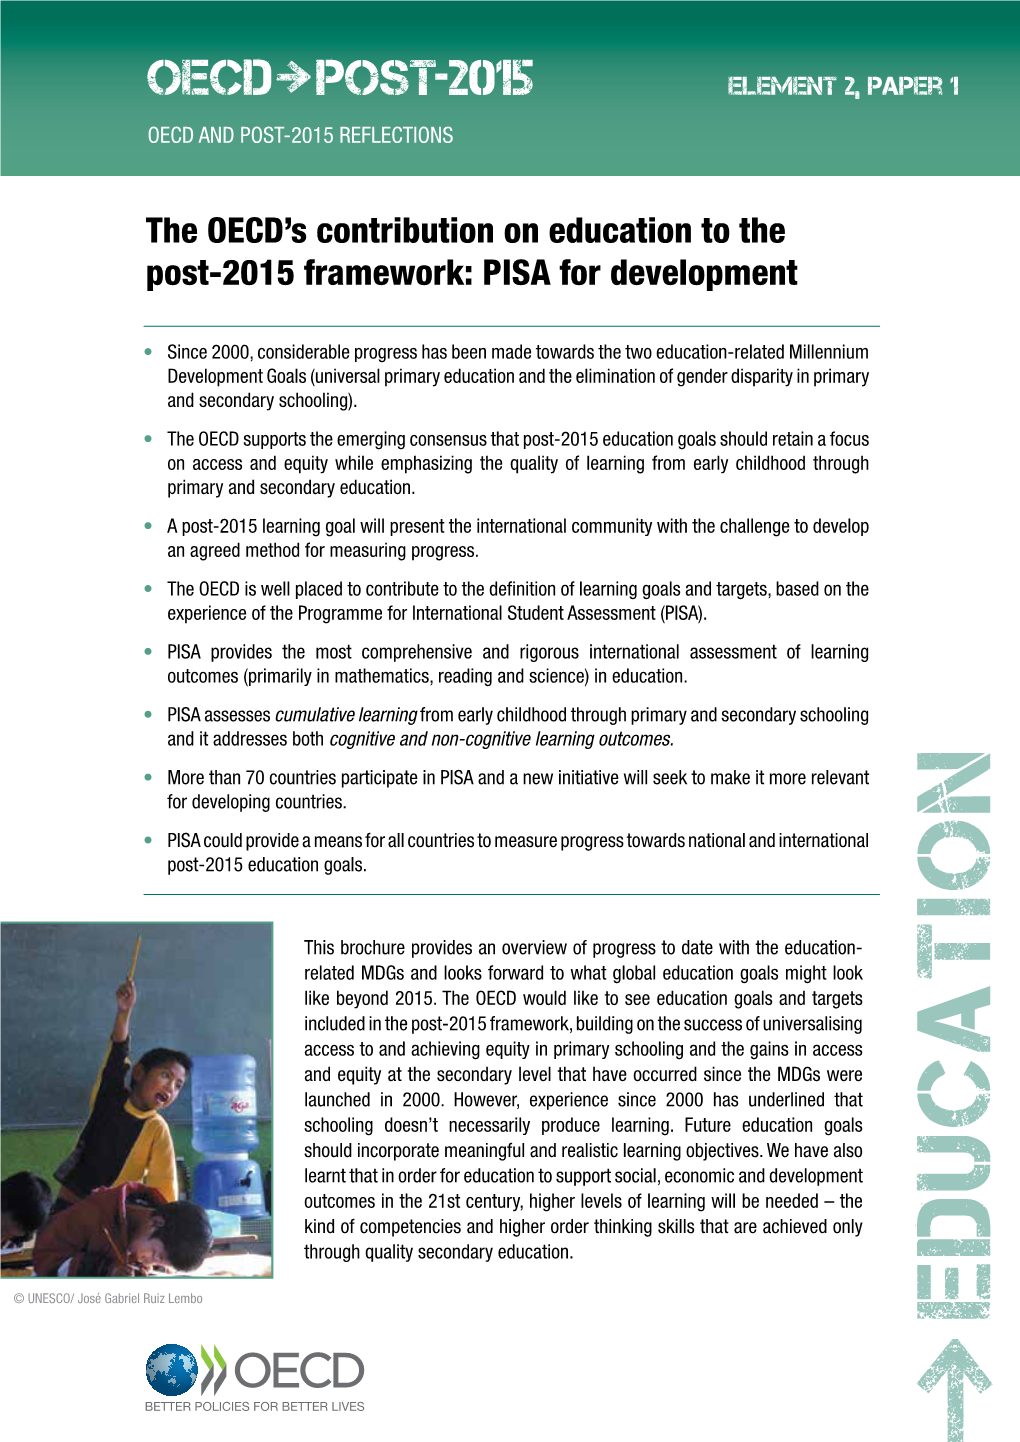 Education to the Post-2015 Framework: PISA for Development